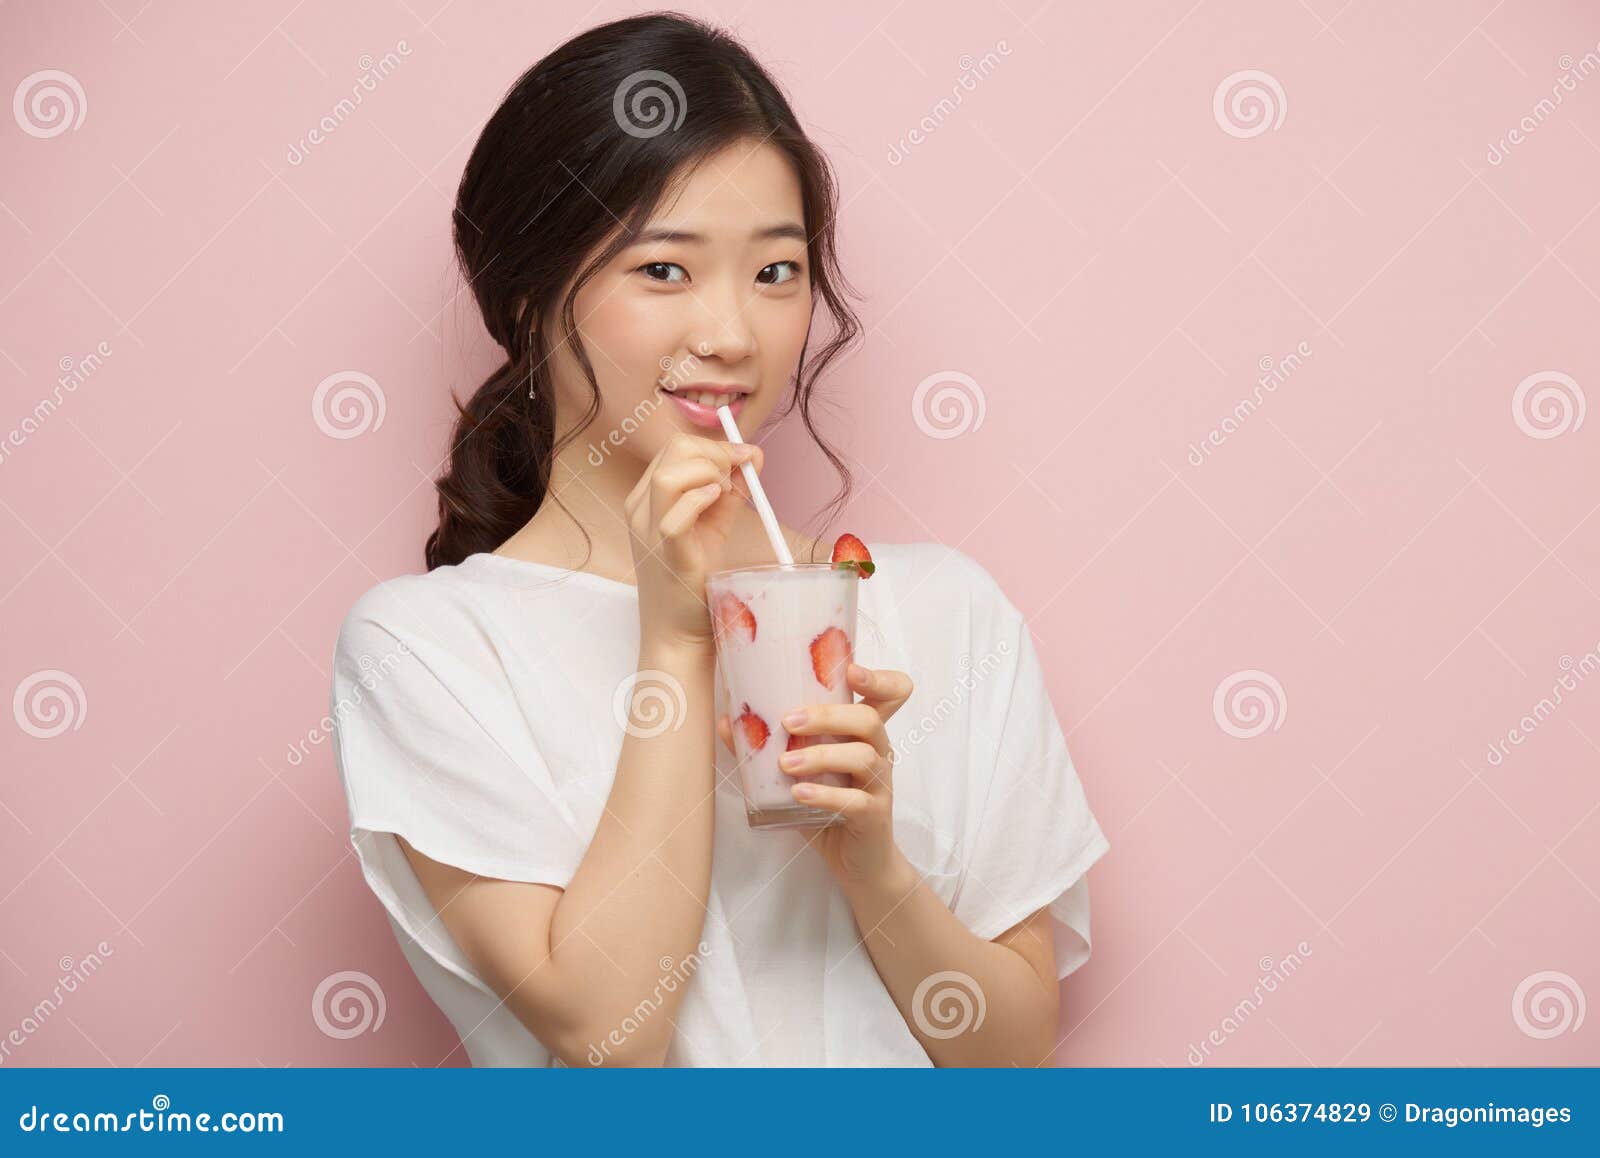 Enjoying Milkshake Stock Image Image Of Tasty Delicious 106374829